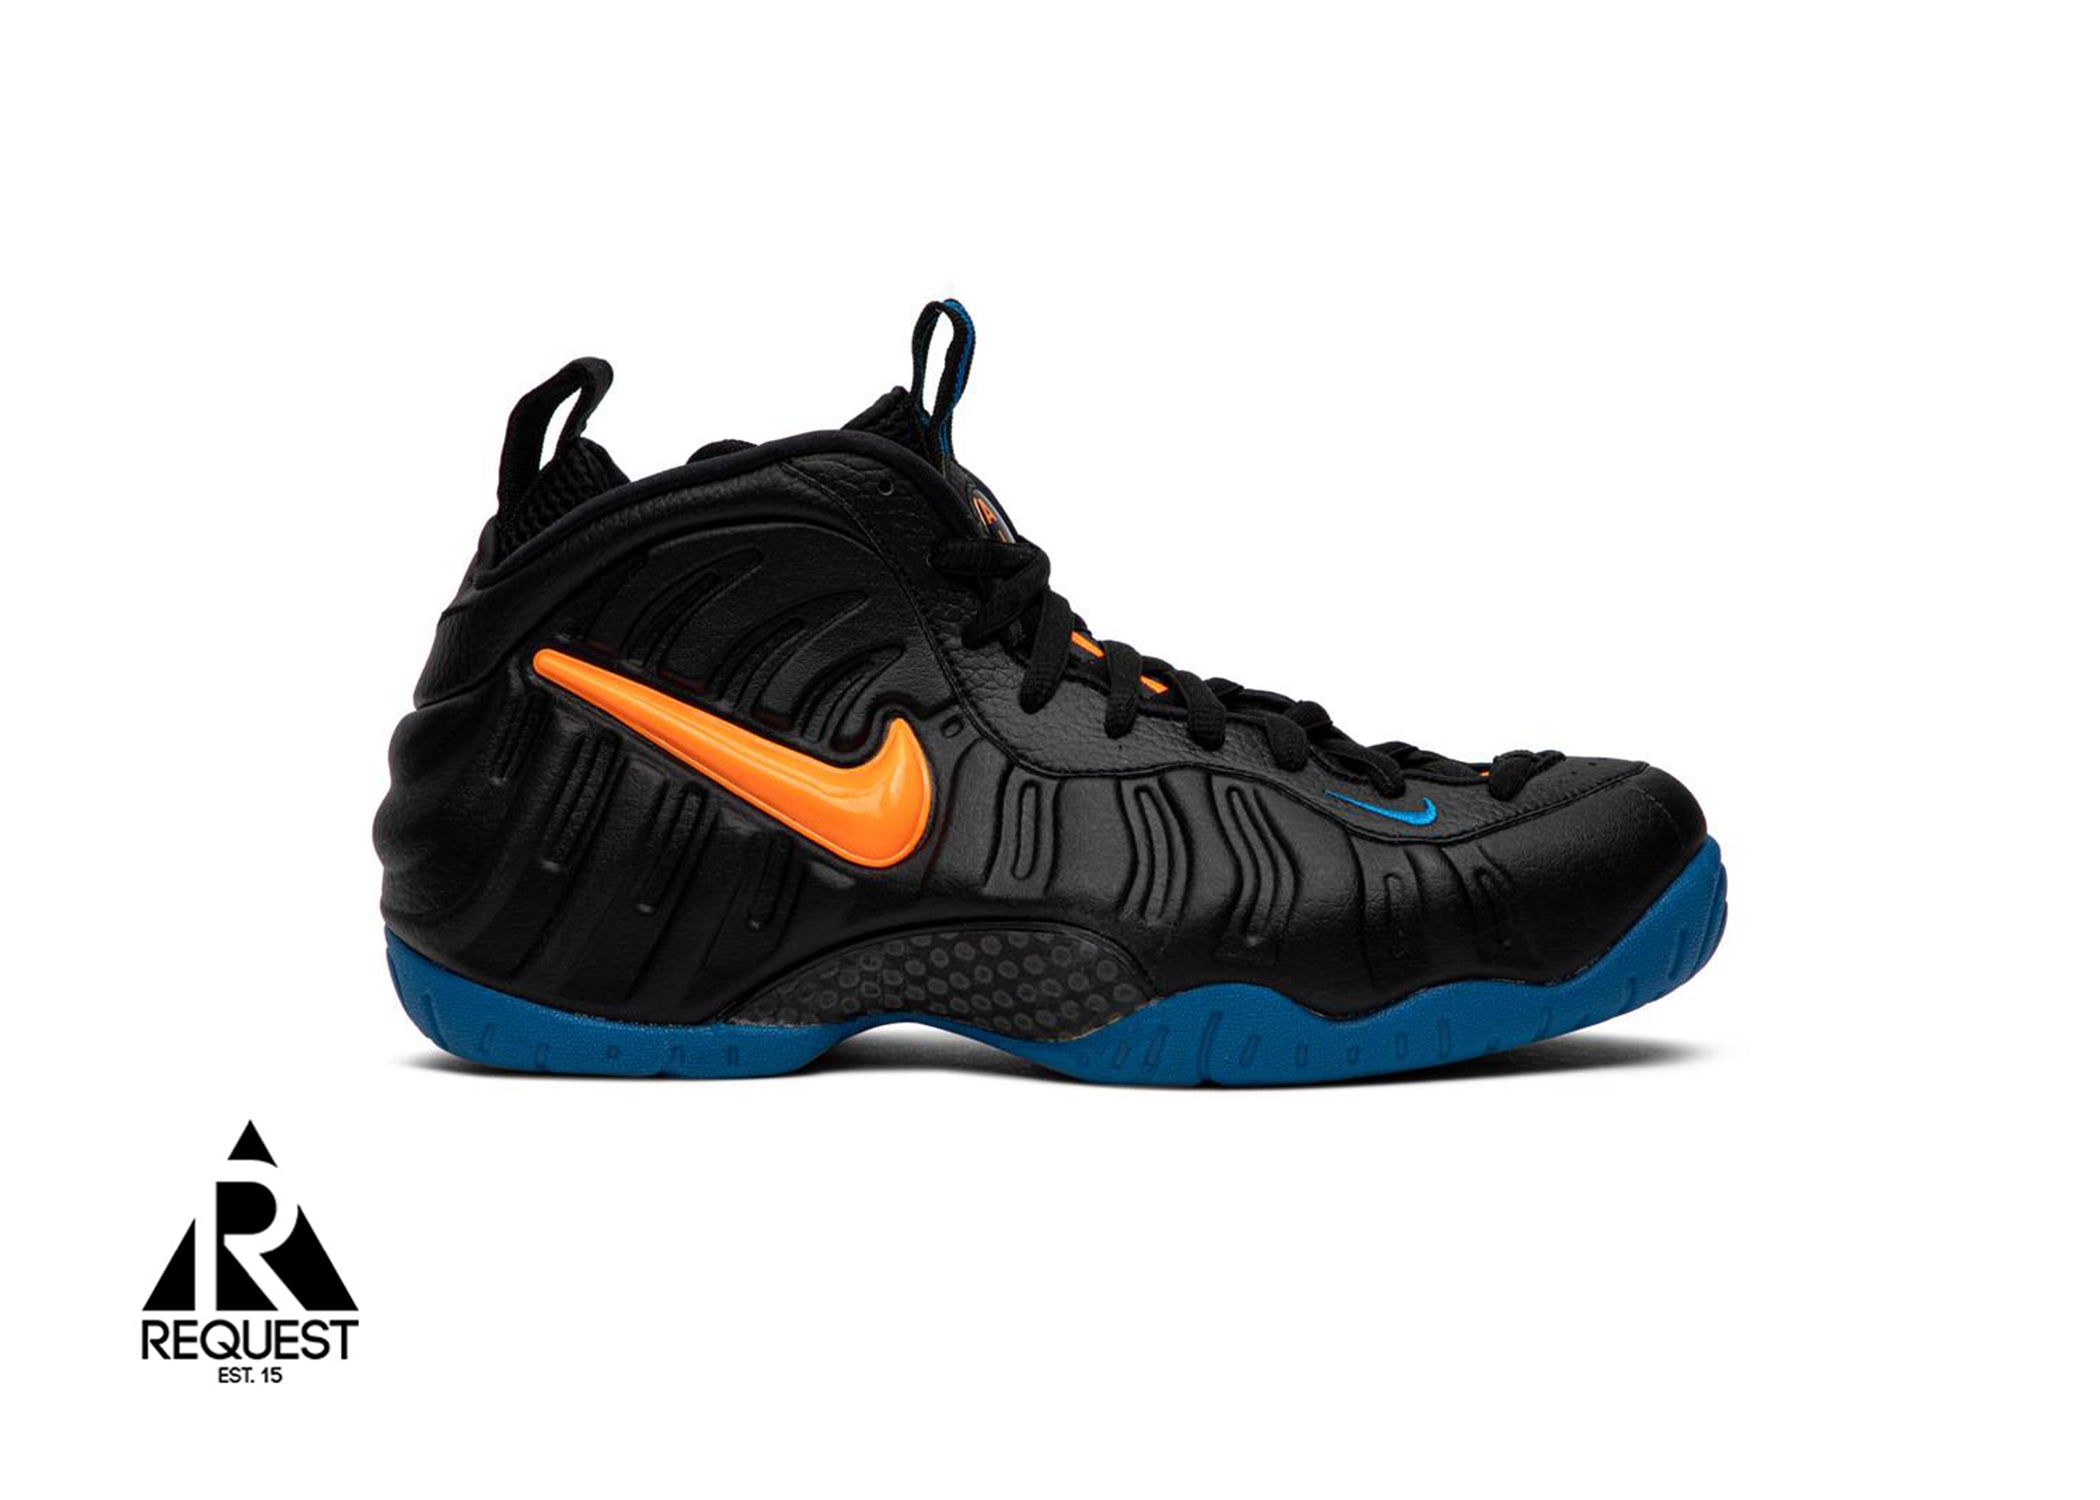 Nike Air Foamposite Pro “Knicks”